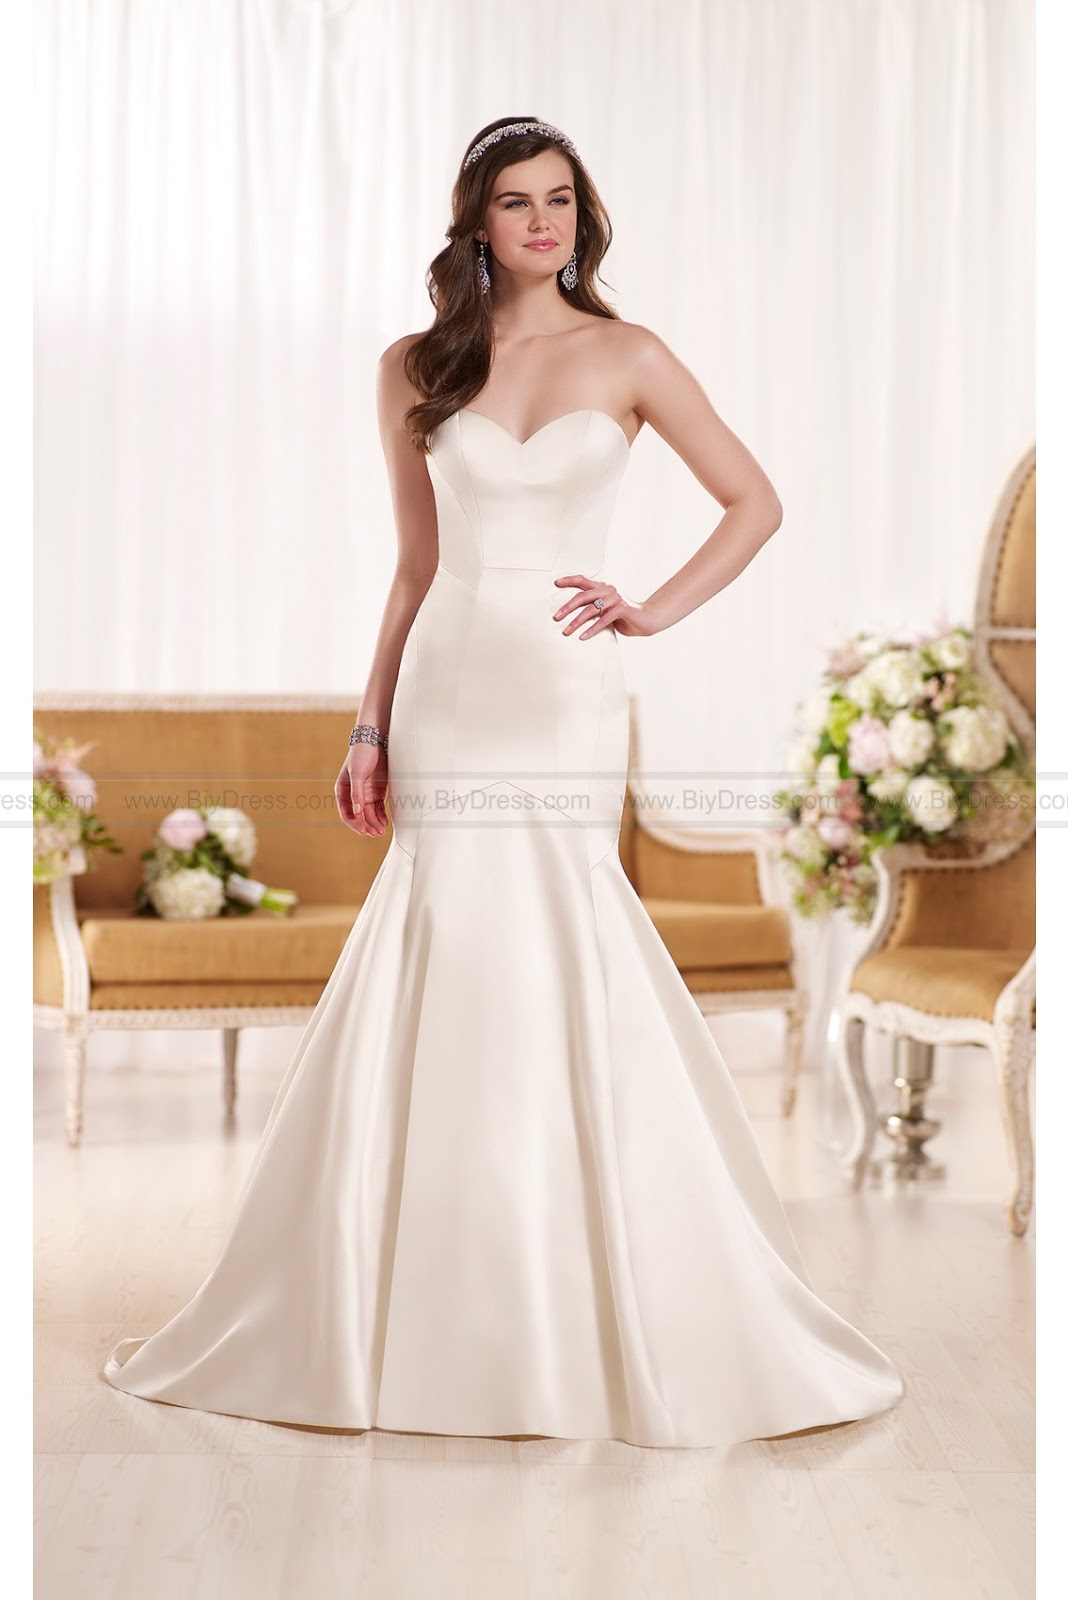 2016 Cheap Wedding Dresses Online At Biydress Com Cheap Essense Of